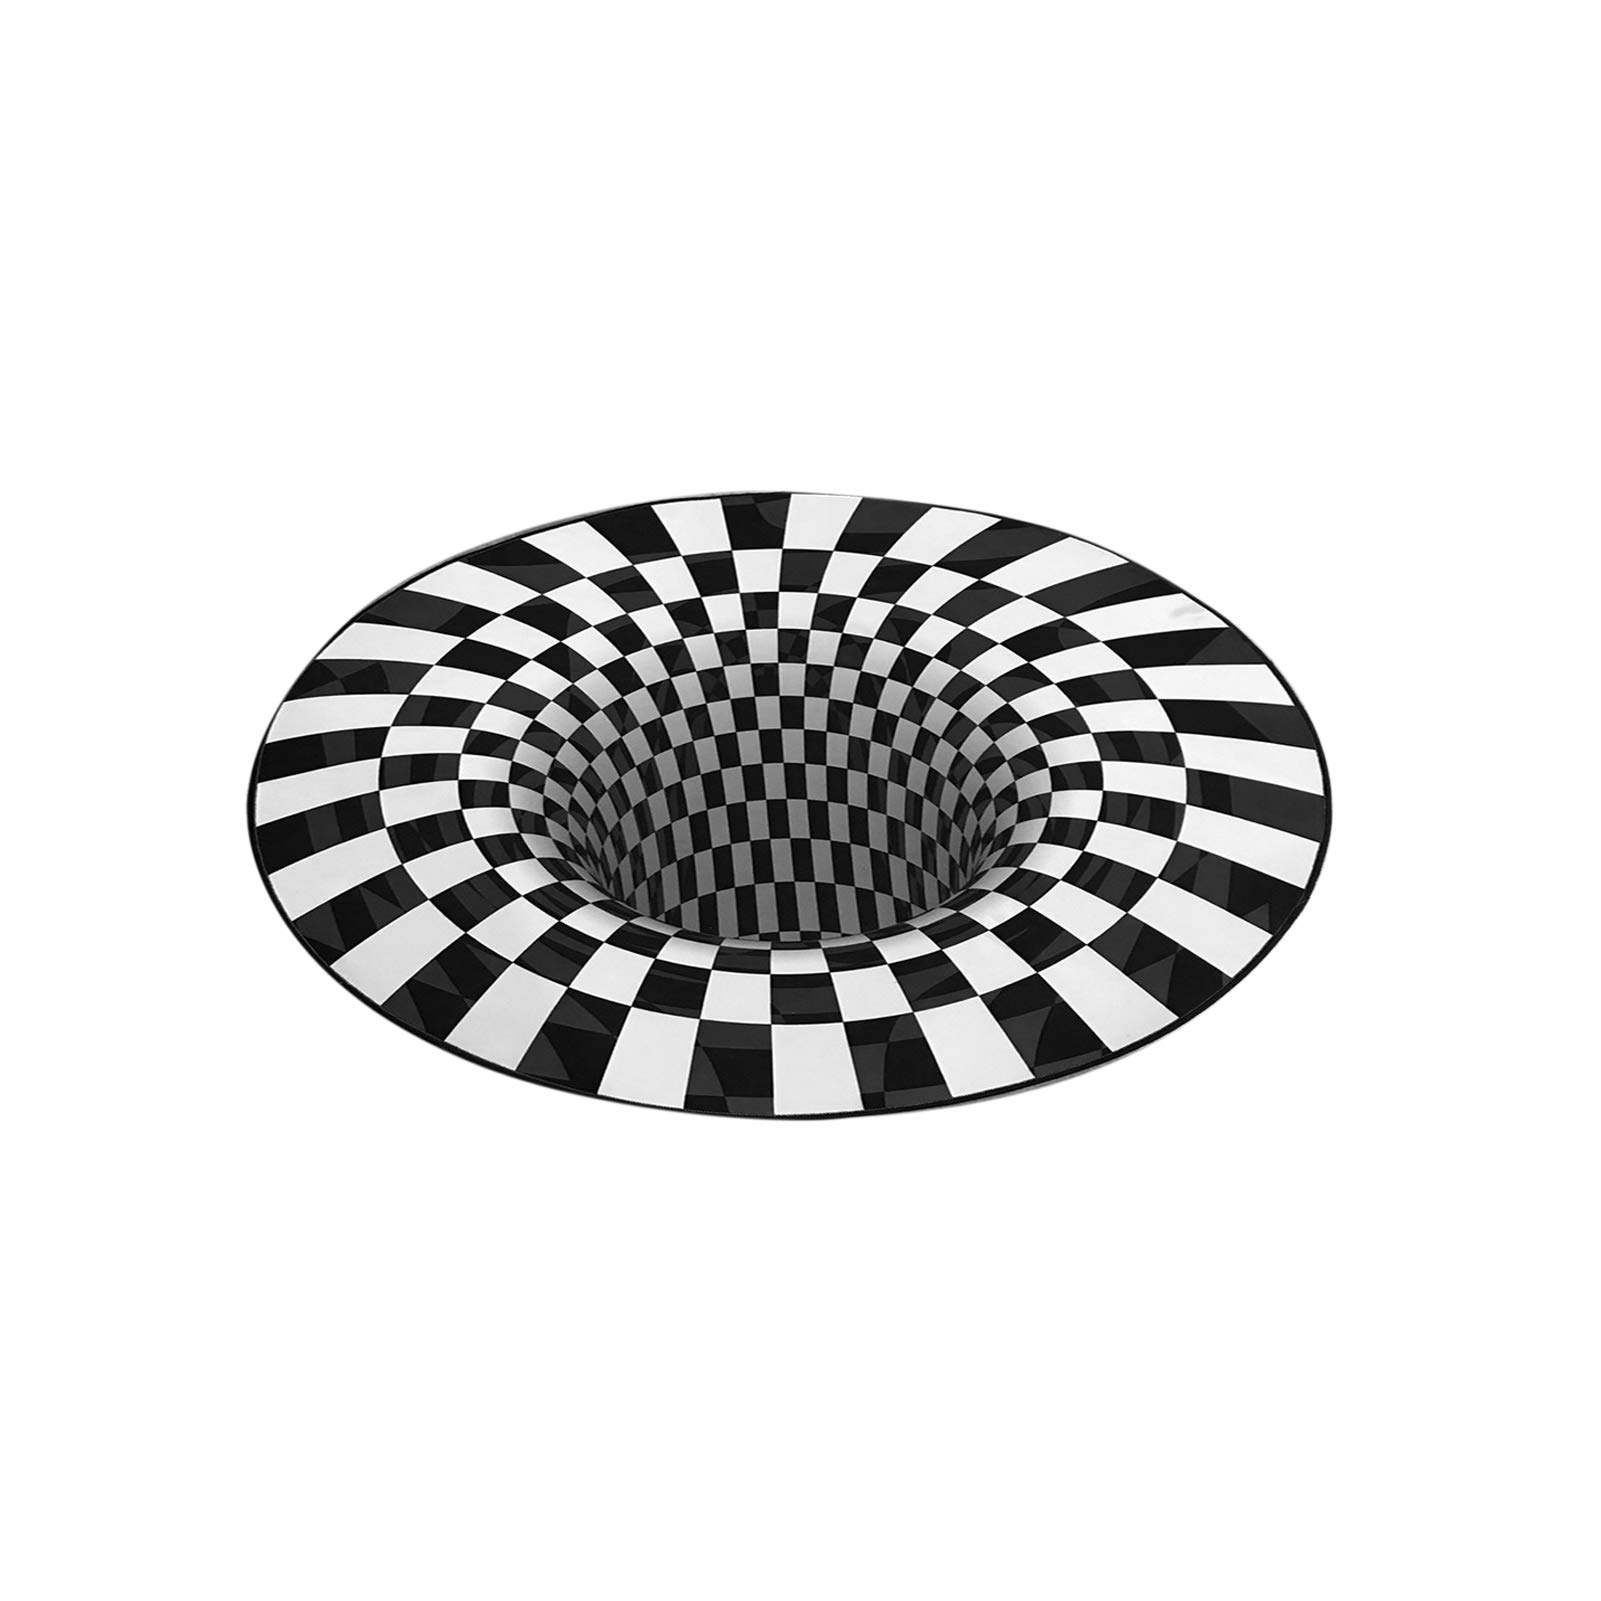 Tree2018 3D-Illusion-Teppich, runder Teppich, kariert, optische Täuschungen, rutschfester Teppich, Teppichmatte, Bodenmatte, schwarz-weiße Teppiche, Vlies-Fußmatte, für Schlafzimmer, Wohnzimmer, Büro